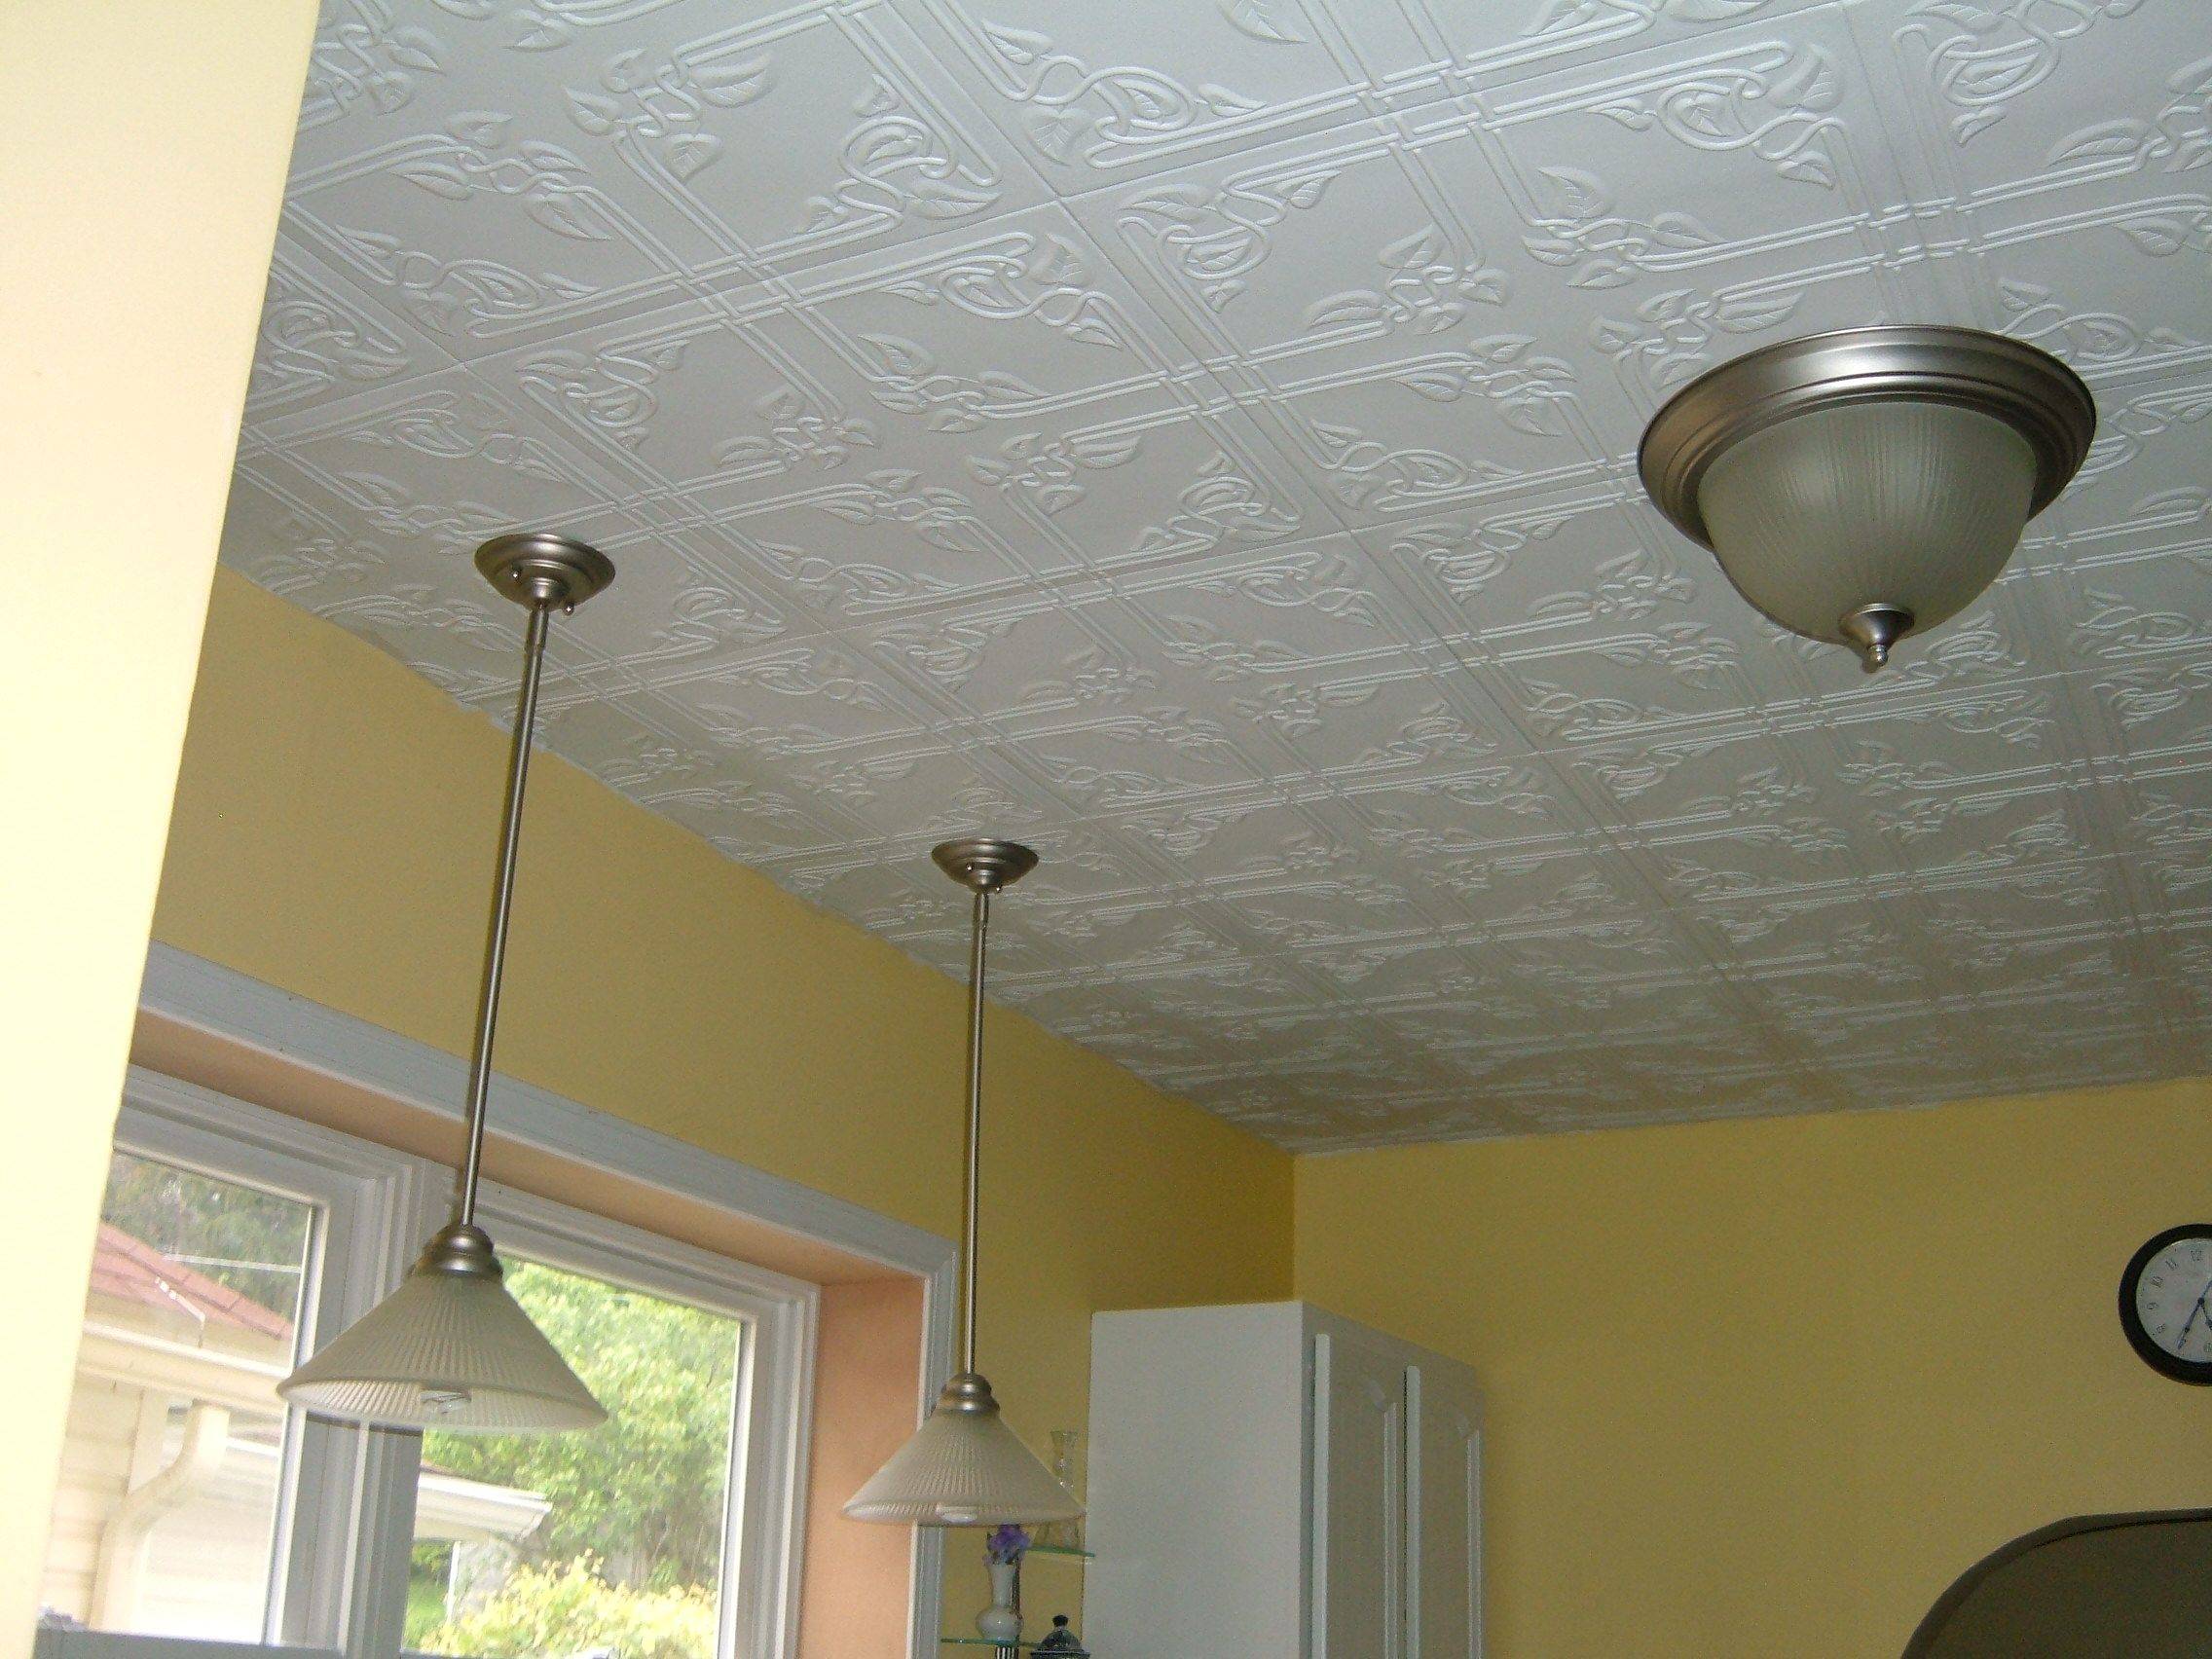 Лучшие потолки для кухни: какой вид покрытия выбрать? сравнение всех видов с фото